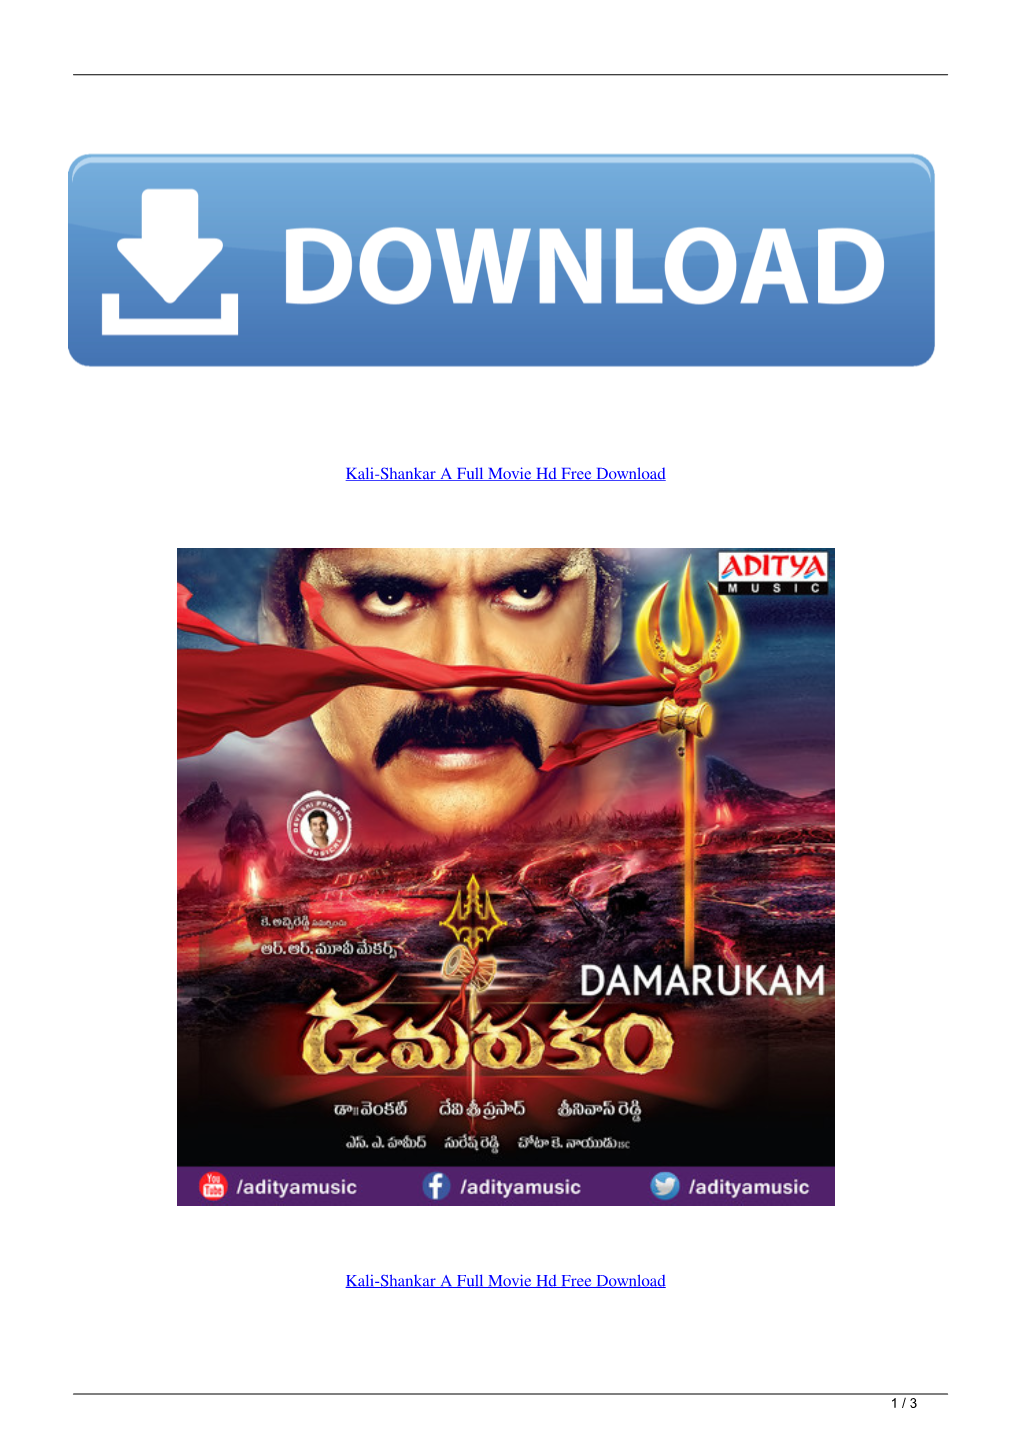 Kalishankar a Full Movie Hd Free Download